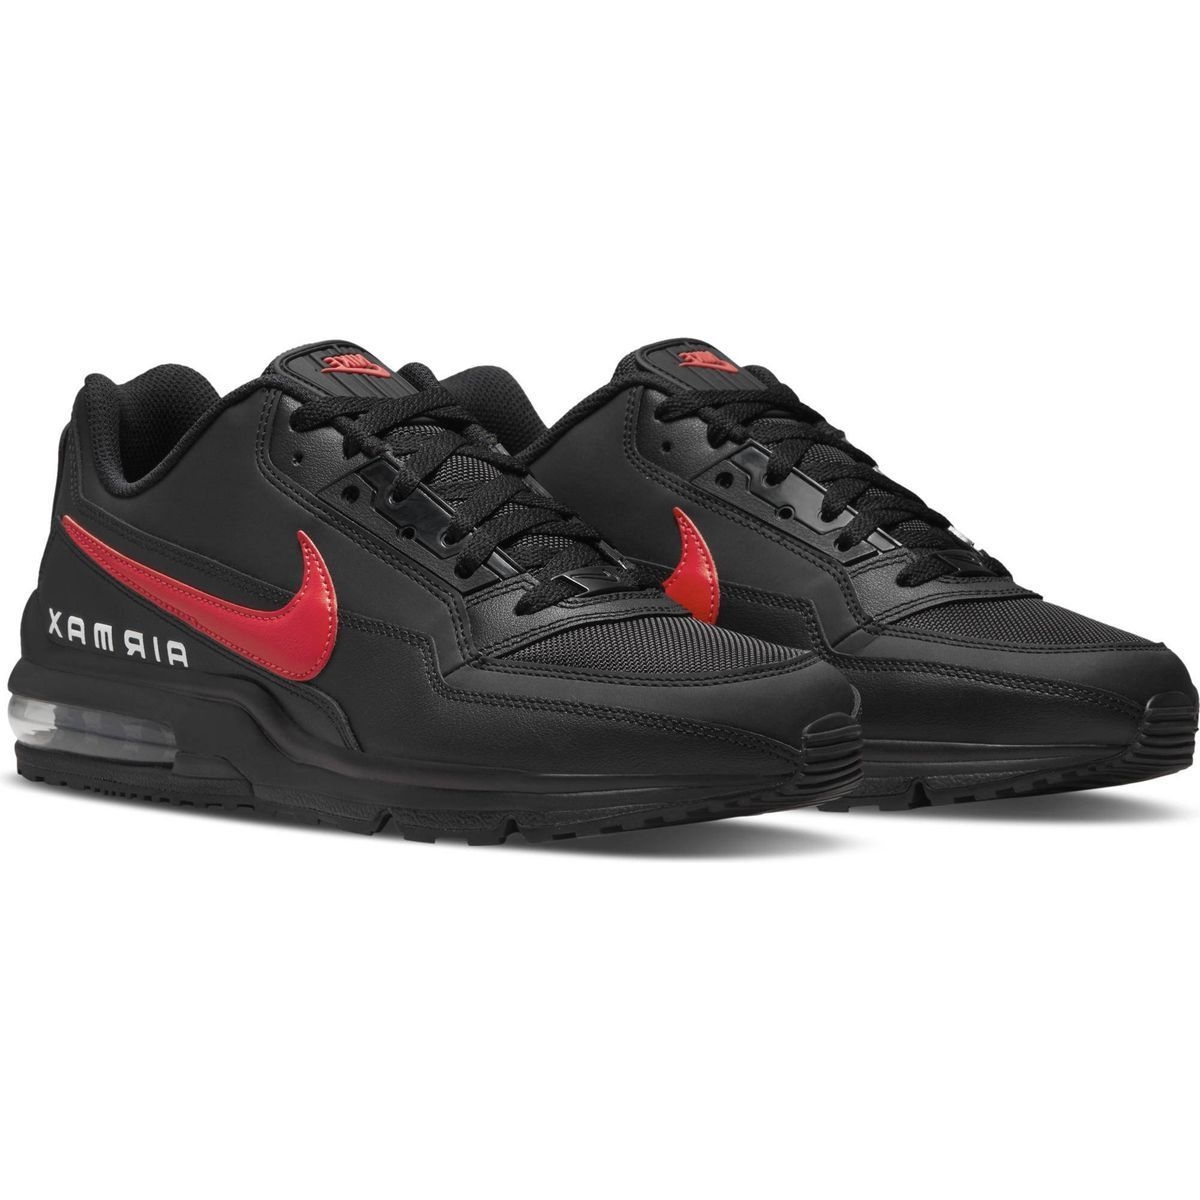 Air max baskets ltd 3 noir homme - Nike